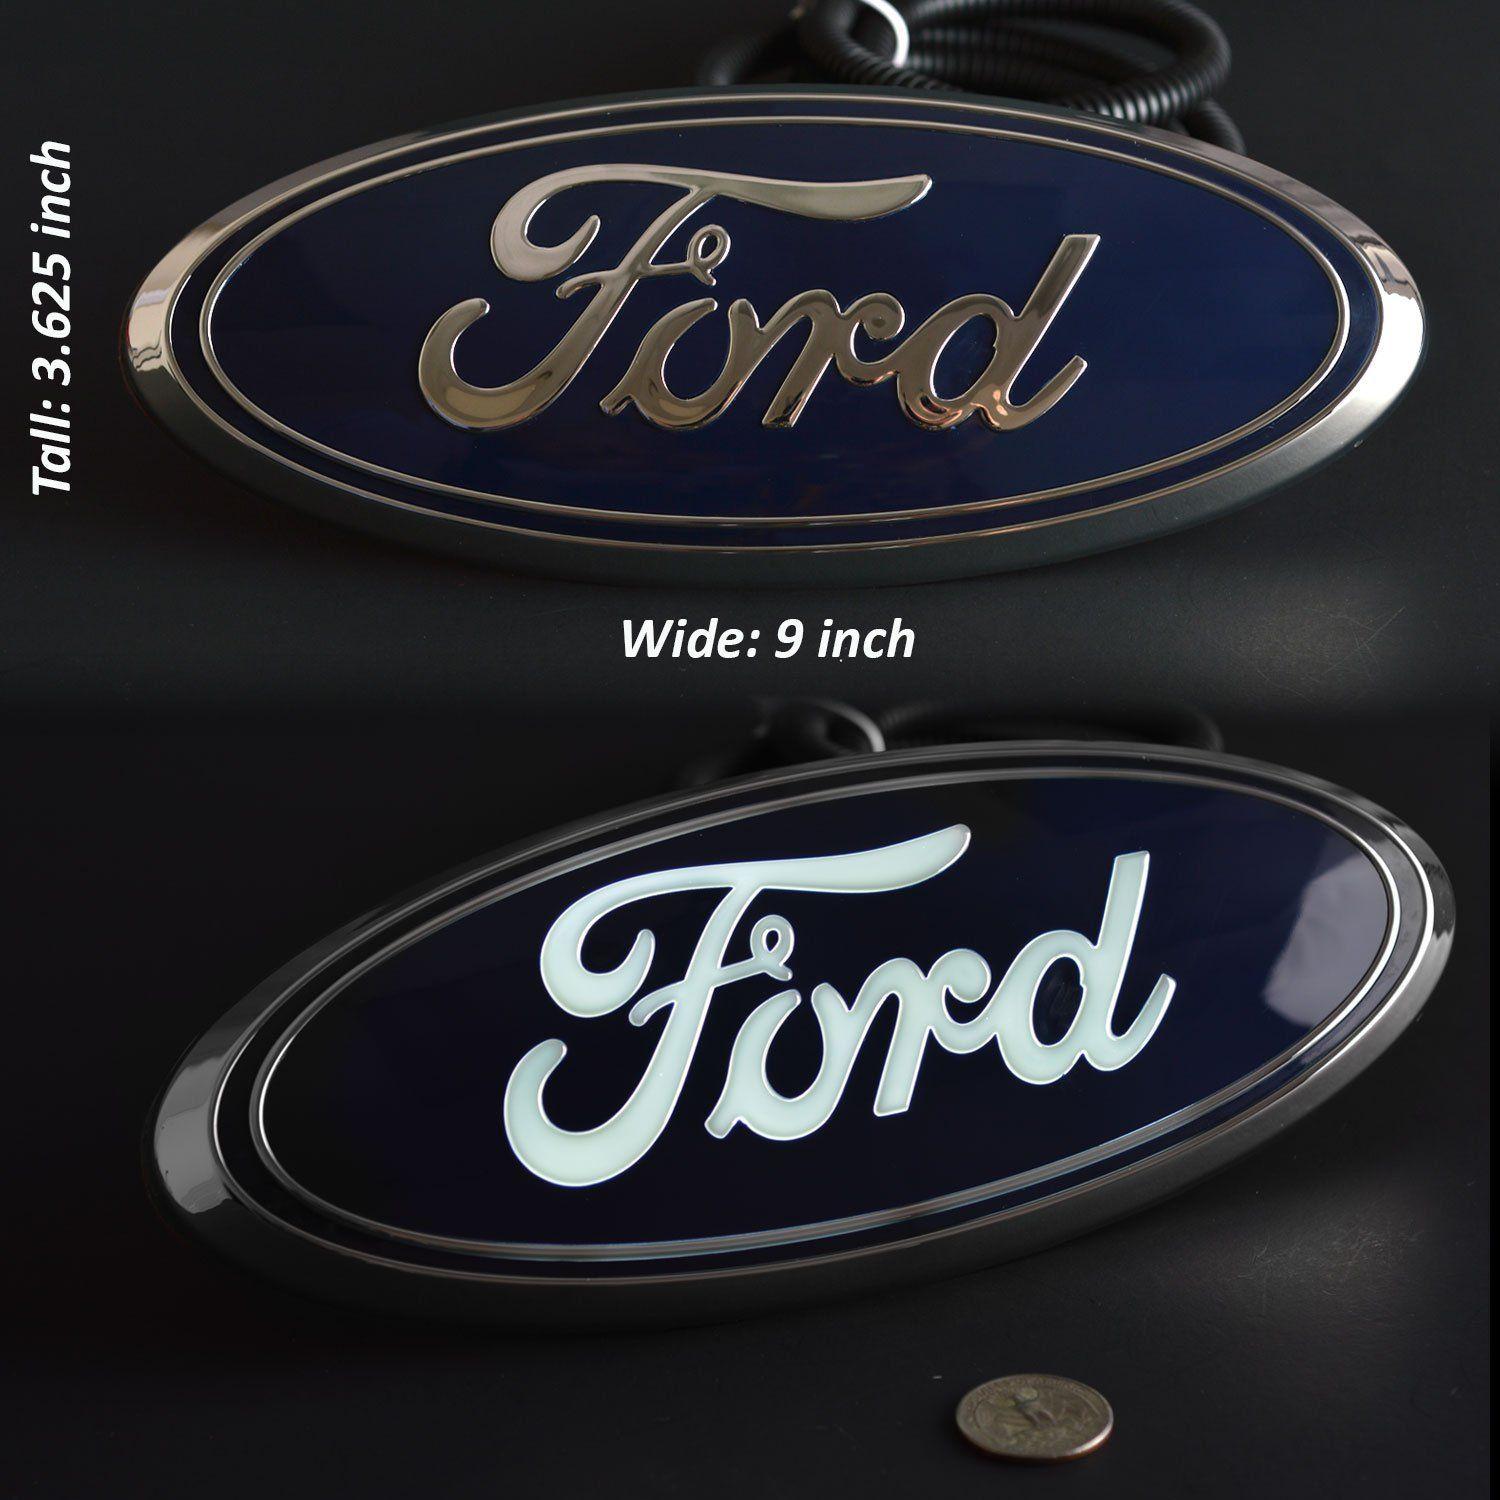 2014 Ford Logo - Ford lighted grill emblem Blue 9” 2016-2018 Explorer 2004-2014 F150 ...